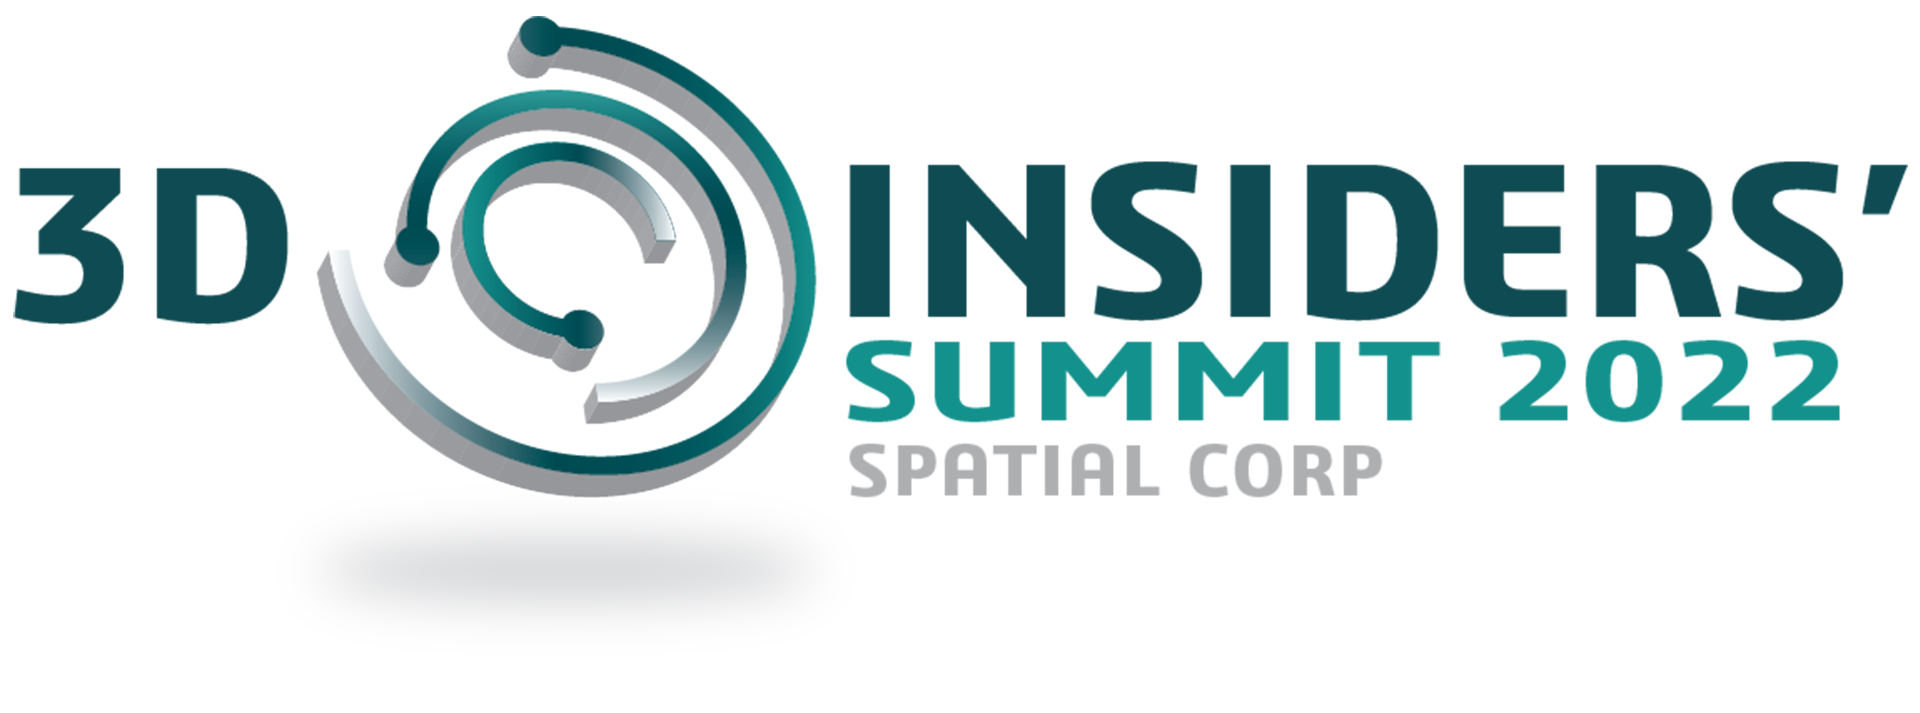 3D Insiders Summit 2022 Logo Webpage